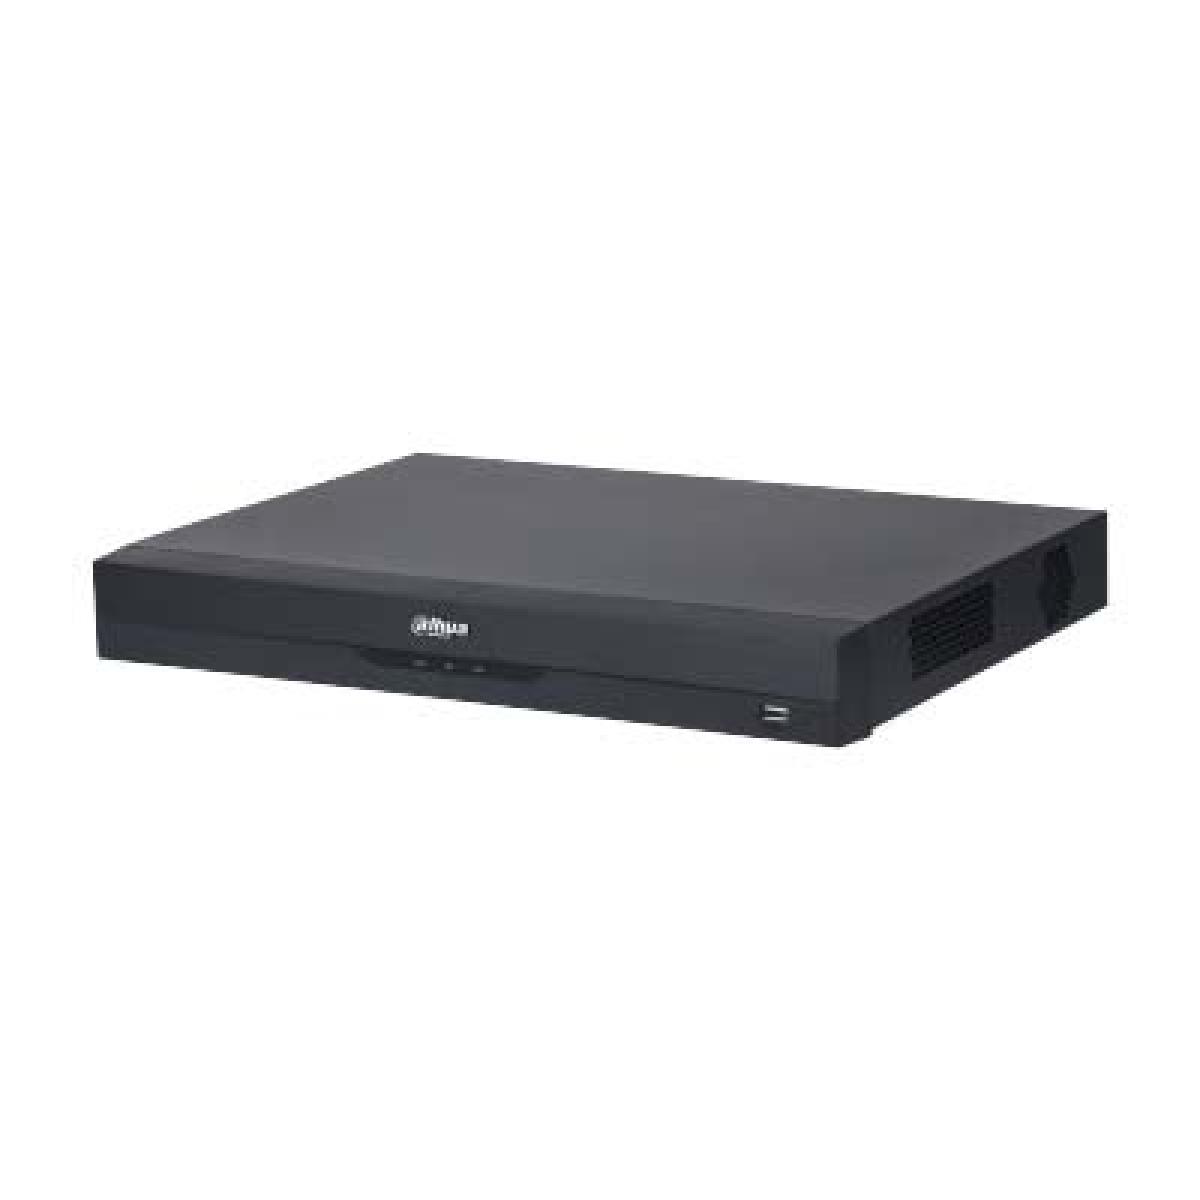 Dahua NVR5208-EI 8 Channels 1U 2HDDs WizSense Network Video Recorder